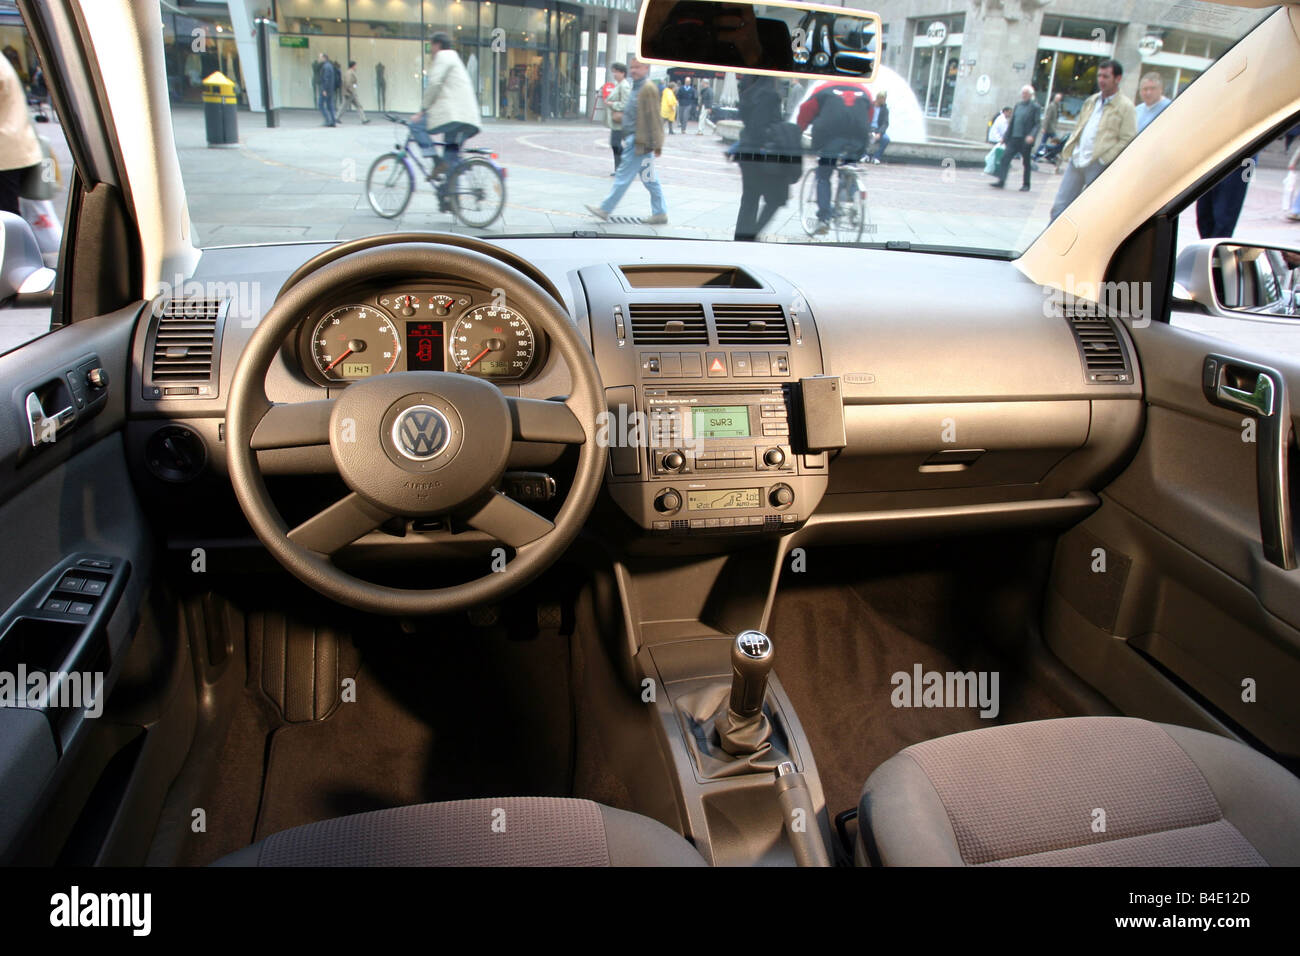 https://c8.alamy.com/compde/b4e12d/auto-vw-volkswagen-polo-14-tdi-kleine-ca-limousine-silber-bj-2002-innenansicht-innenraum-ansicht-cockpit-tech-b4e12d.jpg